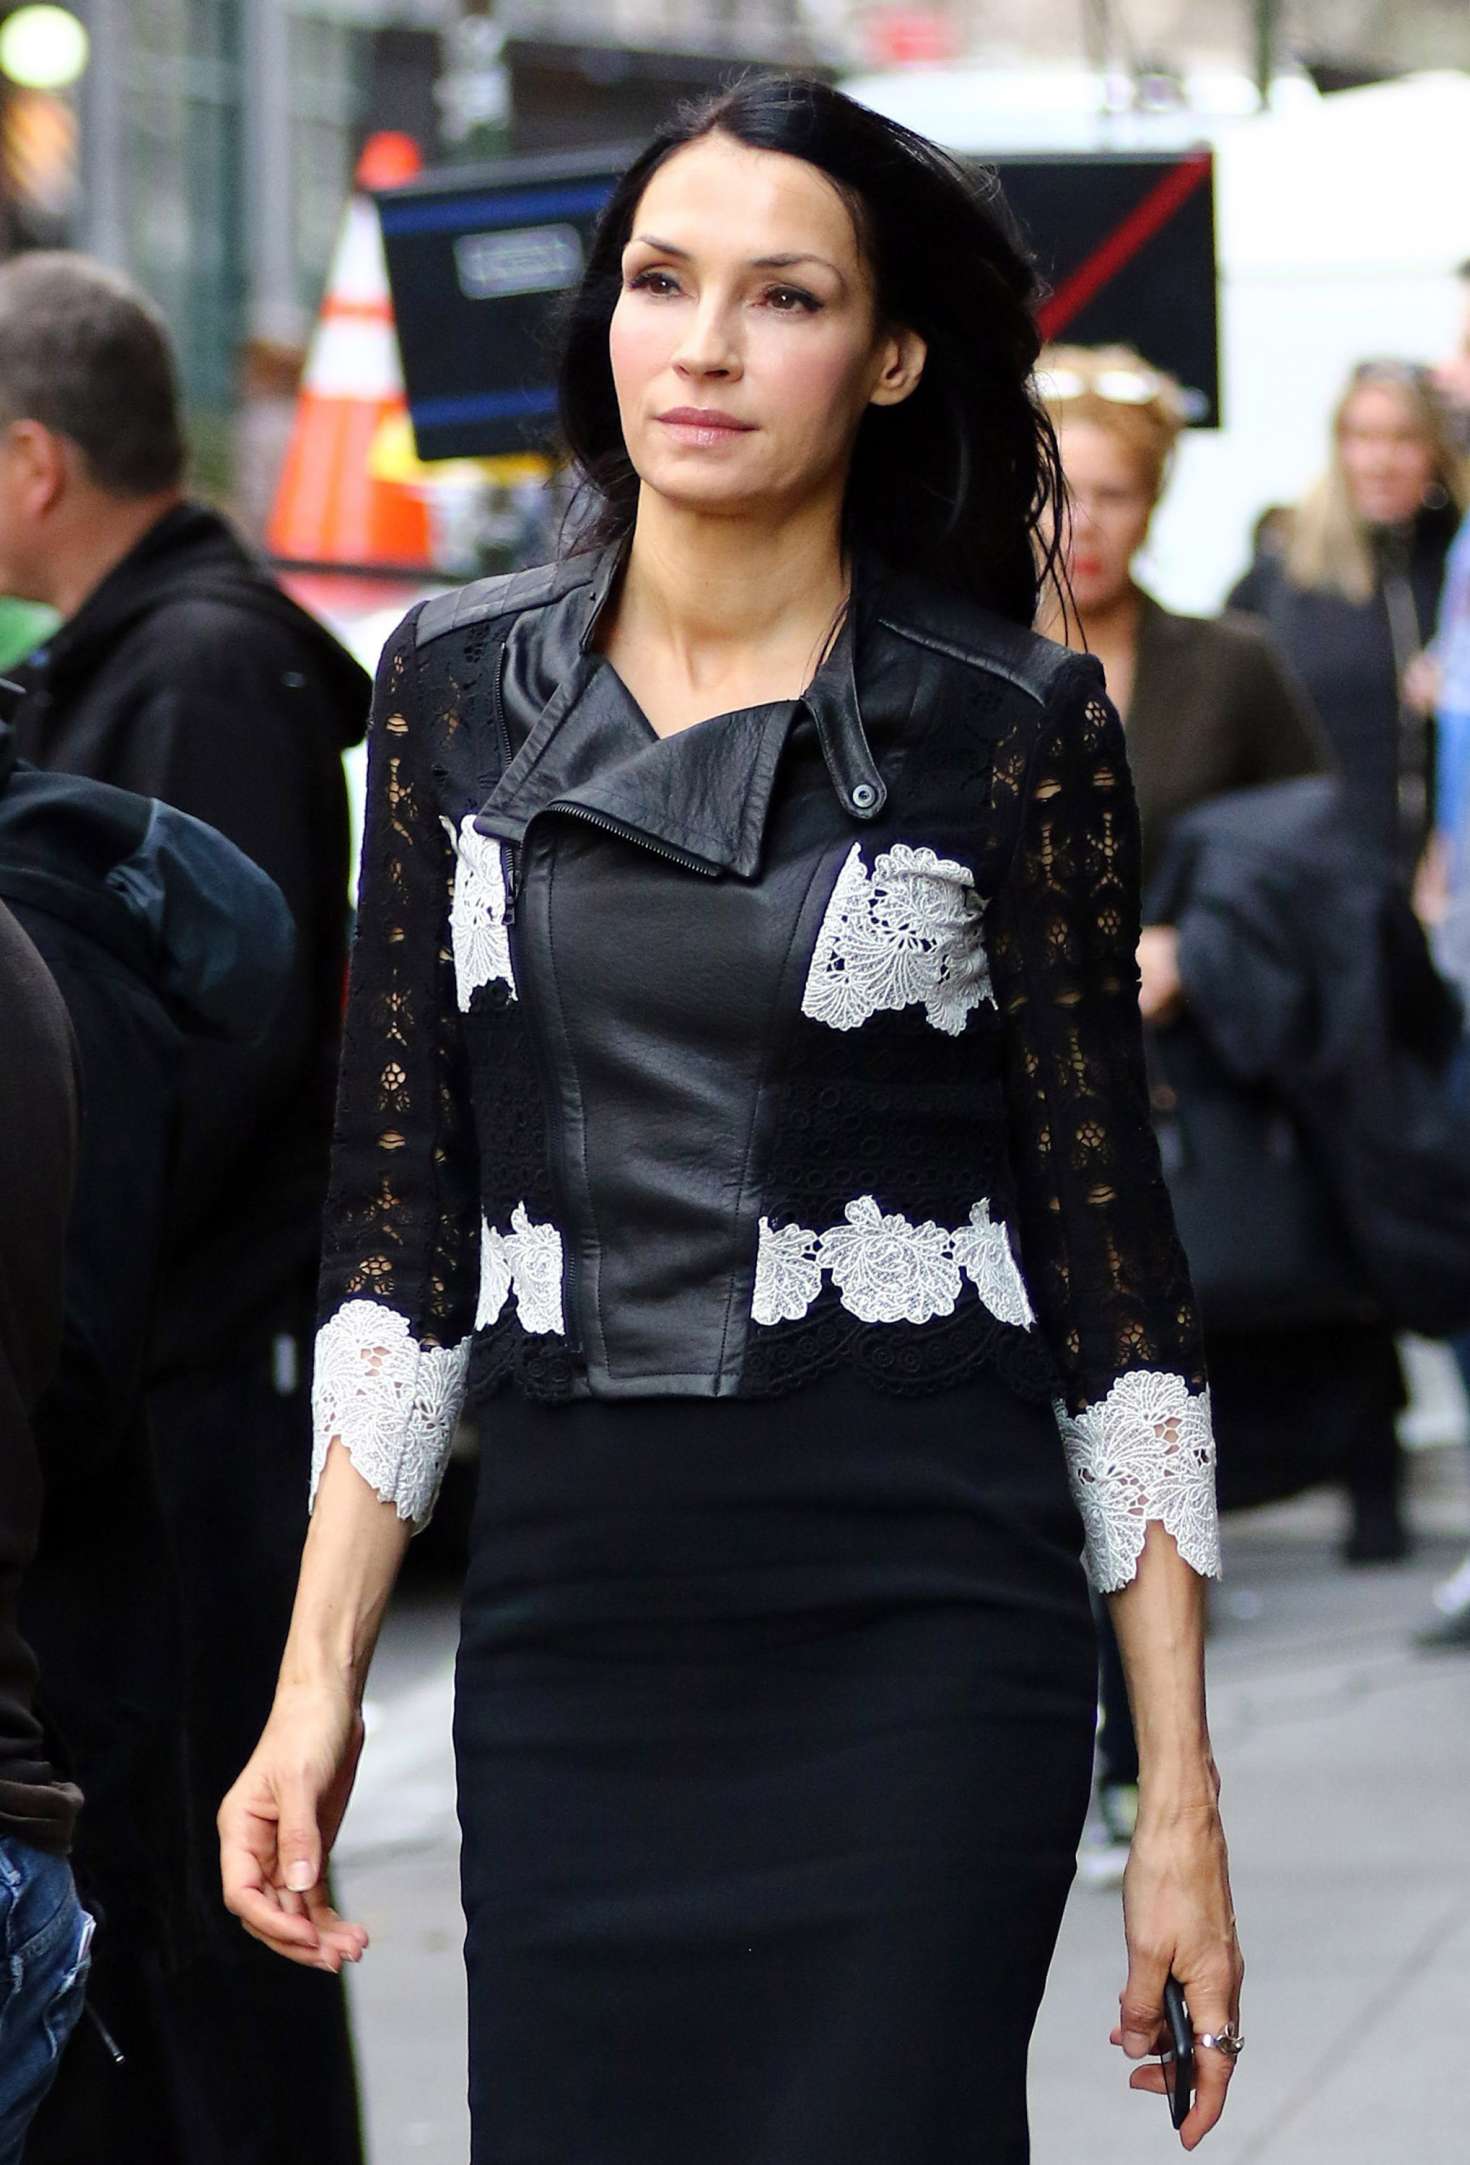 Famke Janssen in a tight black dress in New York